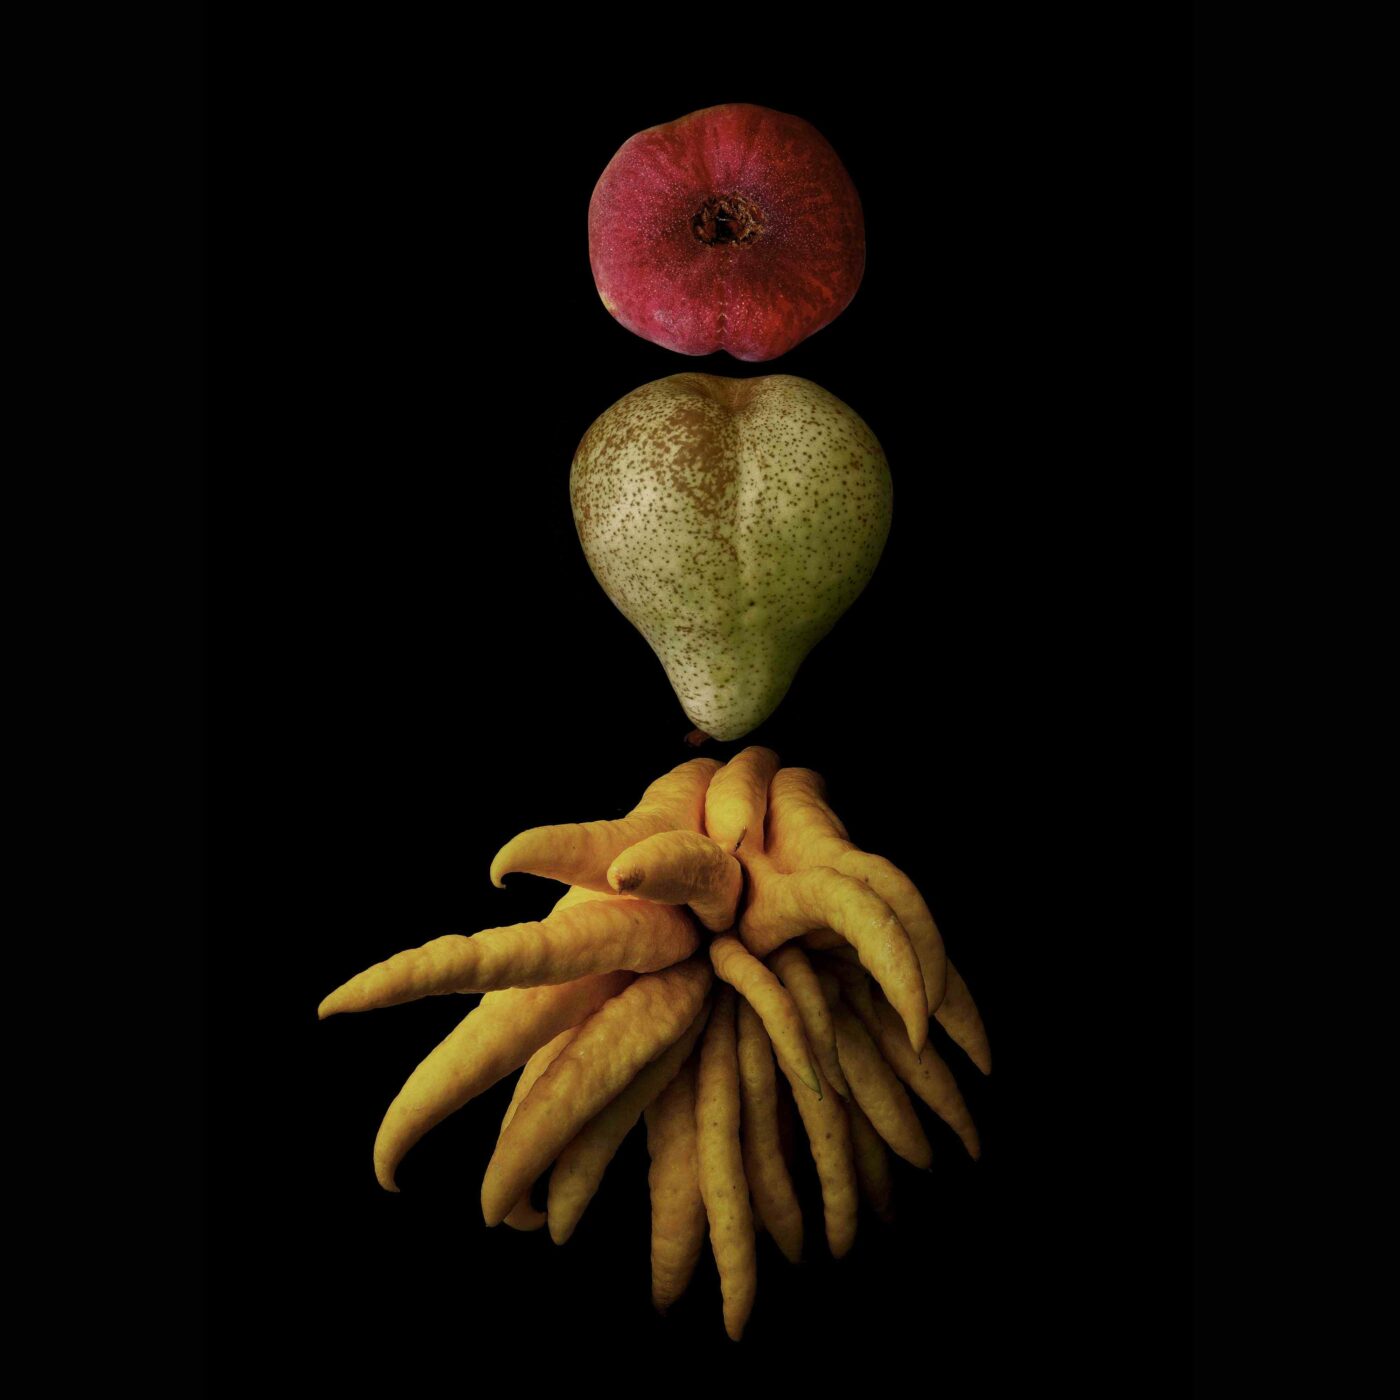 Portrait of Fruit